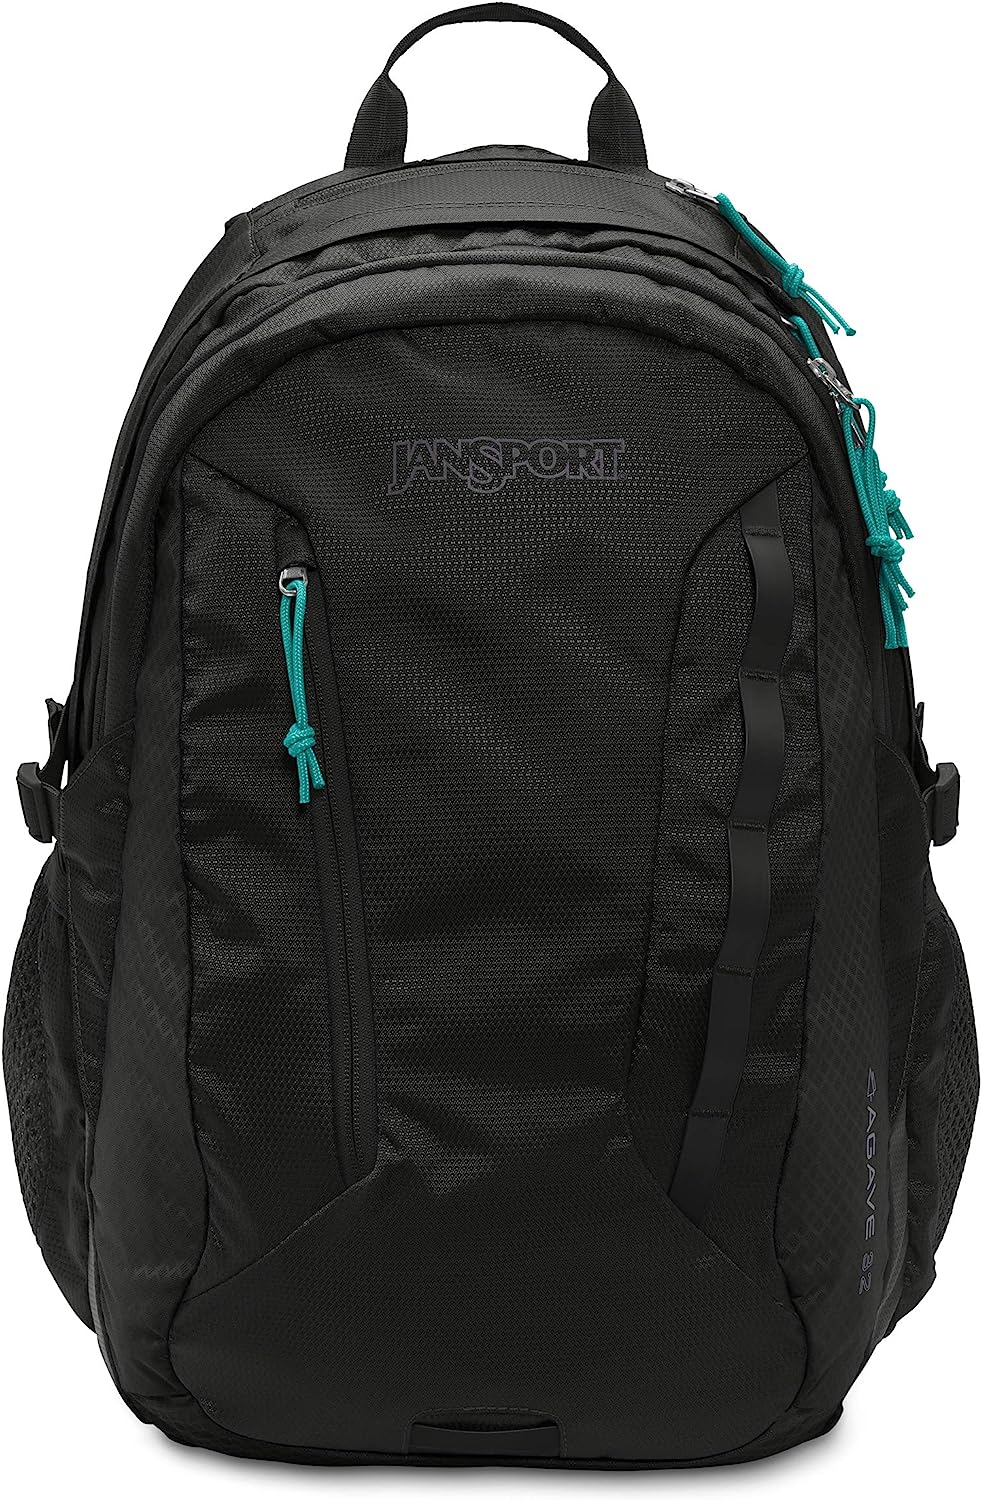 JanSport Women's Agave Backpack Black